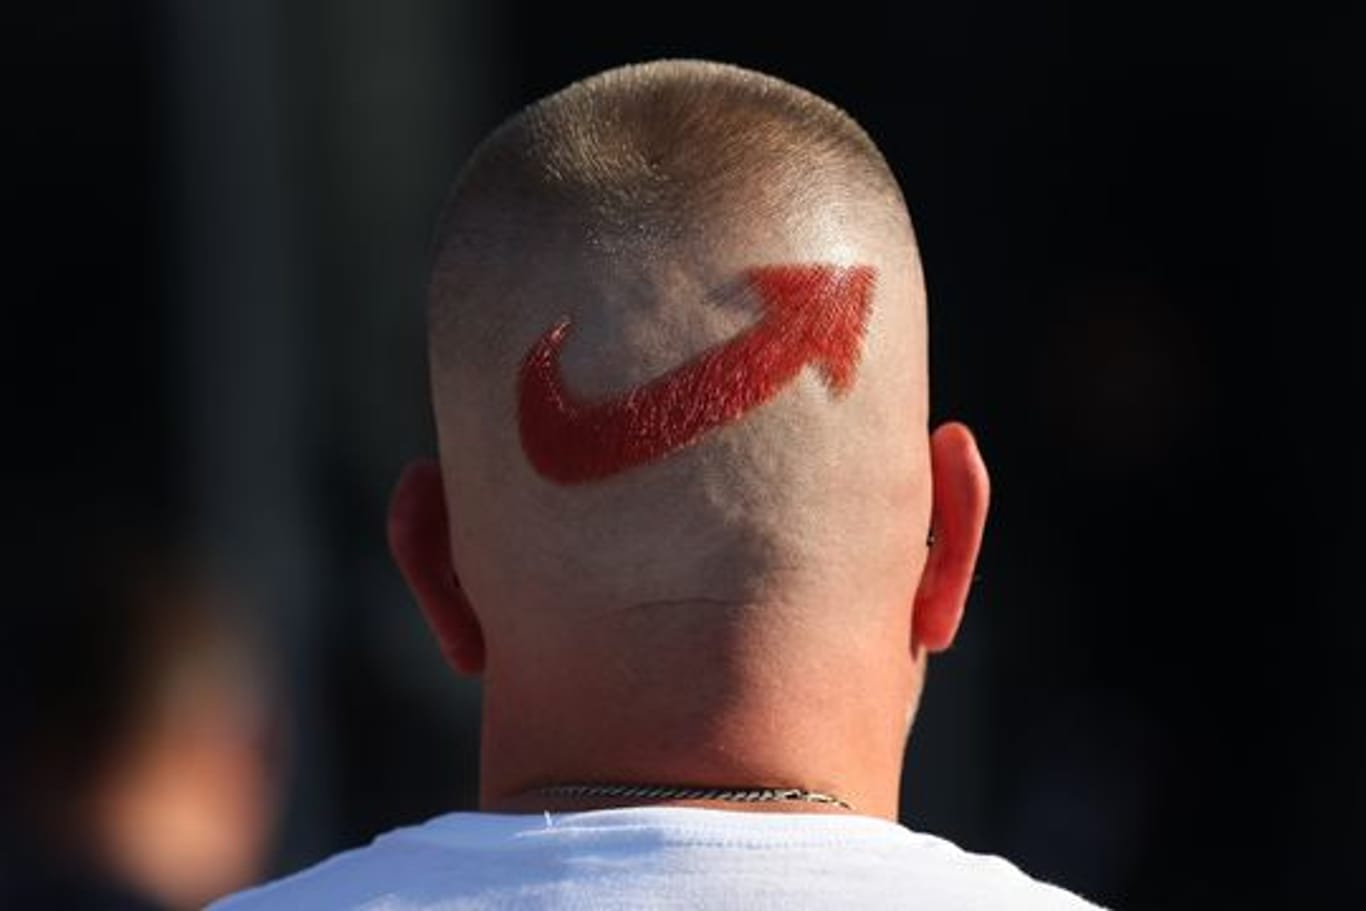 Ein AfD-Anhänger mit einem frisierten Logo der Partei auf dem Hinterkopf.